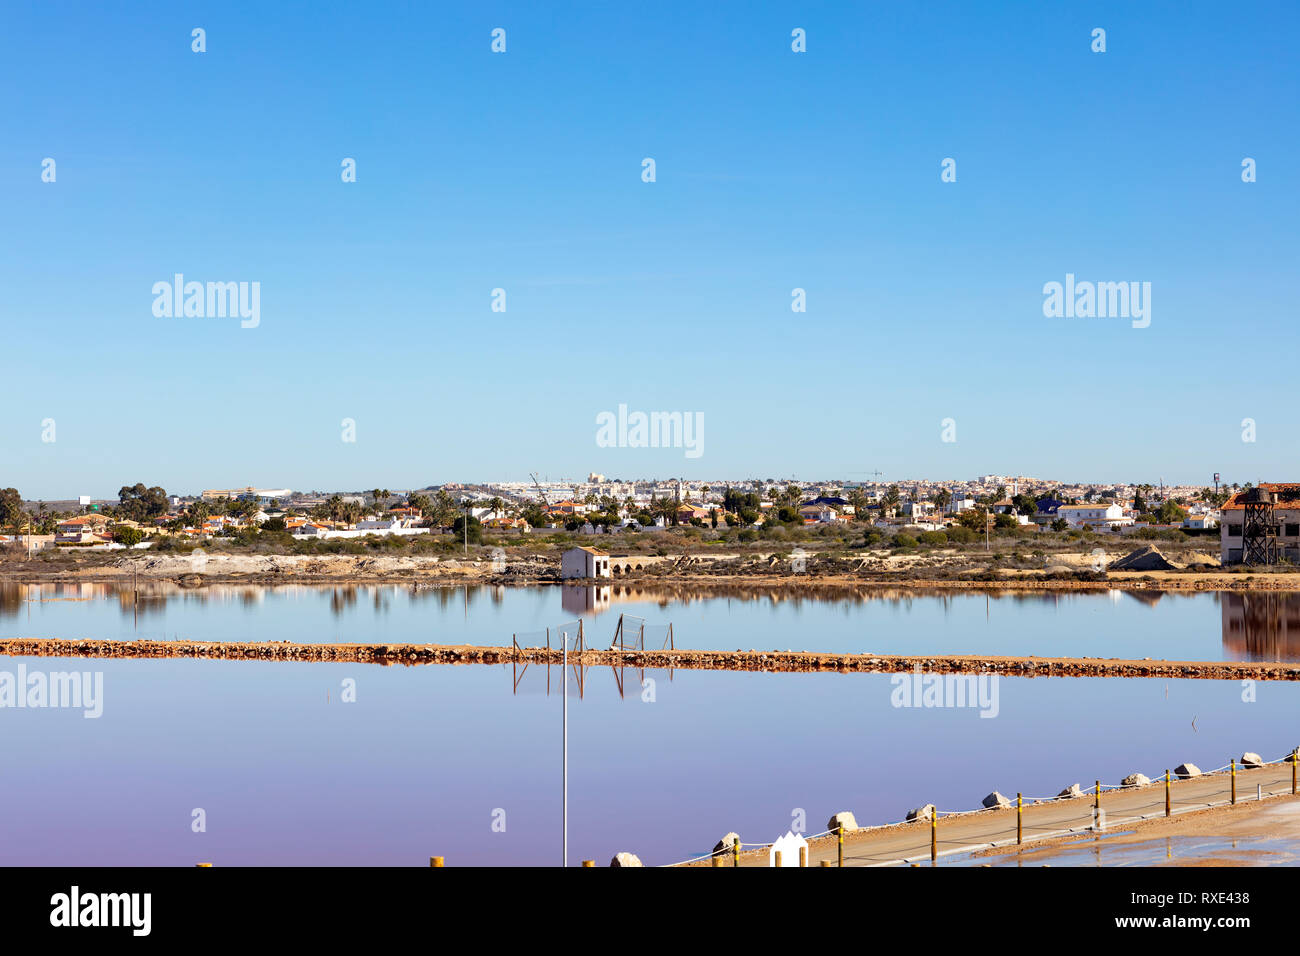 La orilla de un lago salino, como un espejo, con la ciudad de Torrevieja en el fondo Foto de stock